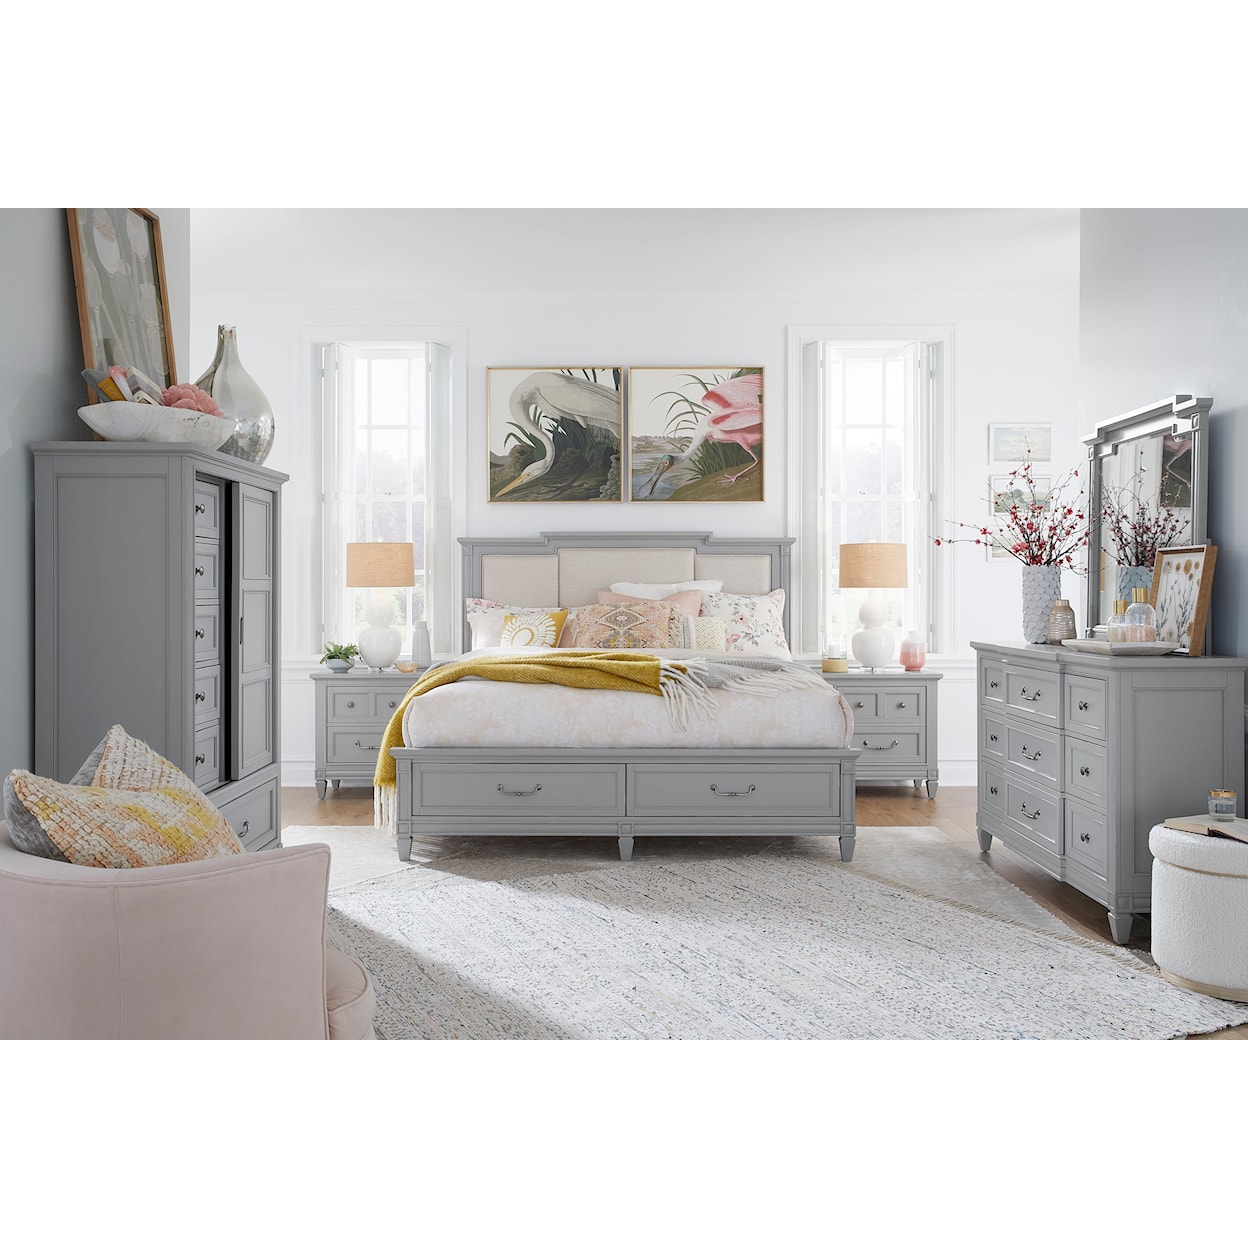 Magnussen Home Glenbrook Bedroom 6-Piece Upholstered King Bedroom Set